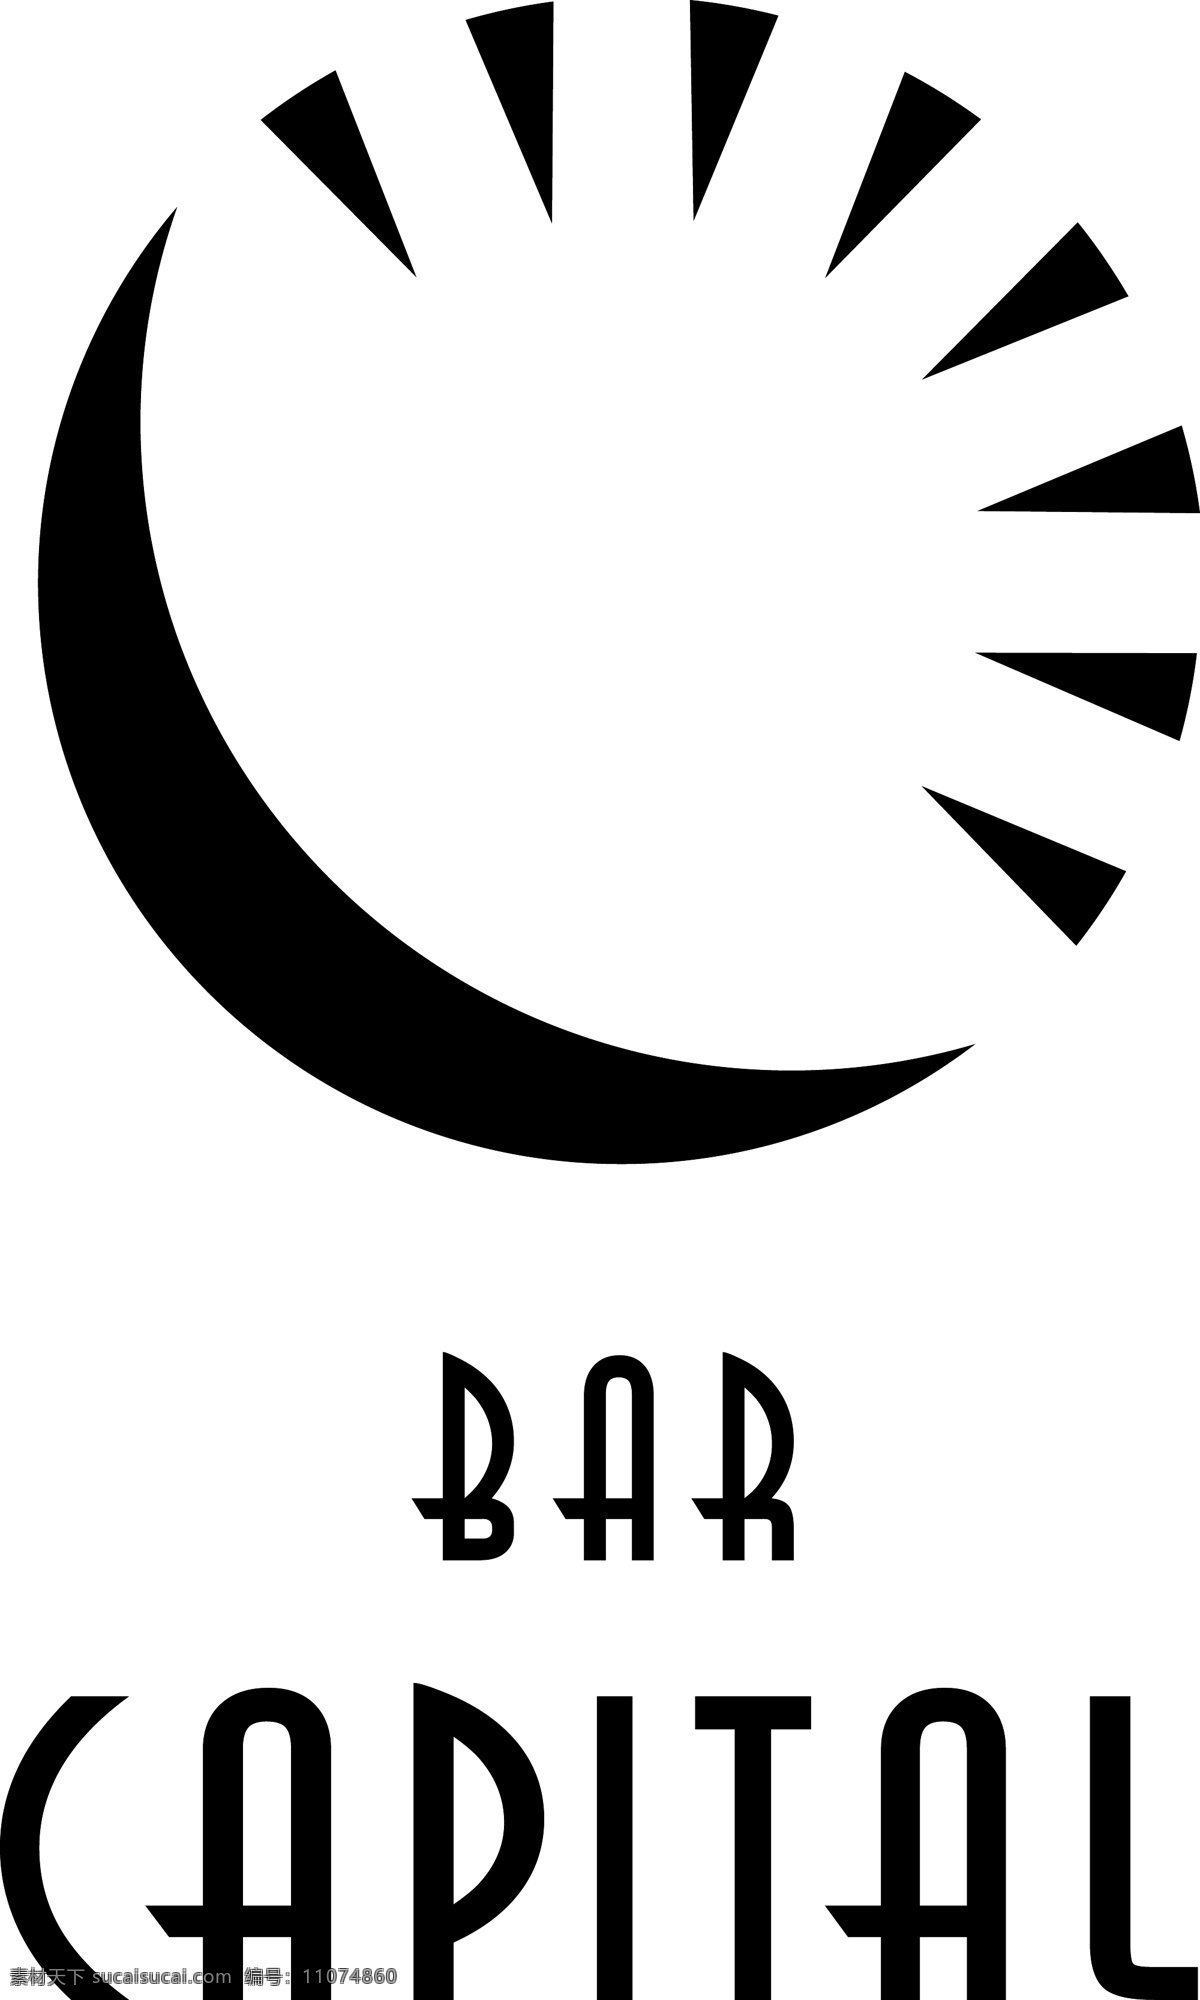 资本 酒吧 自由 杆 标识 门槛 标志 psd源文件 logo设计